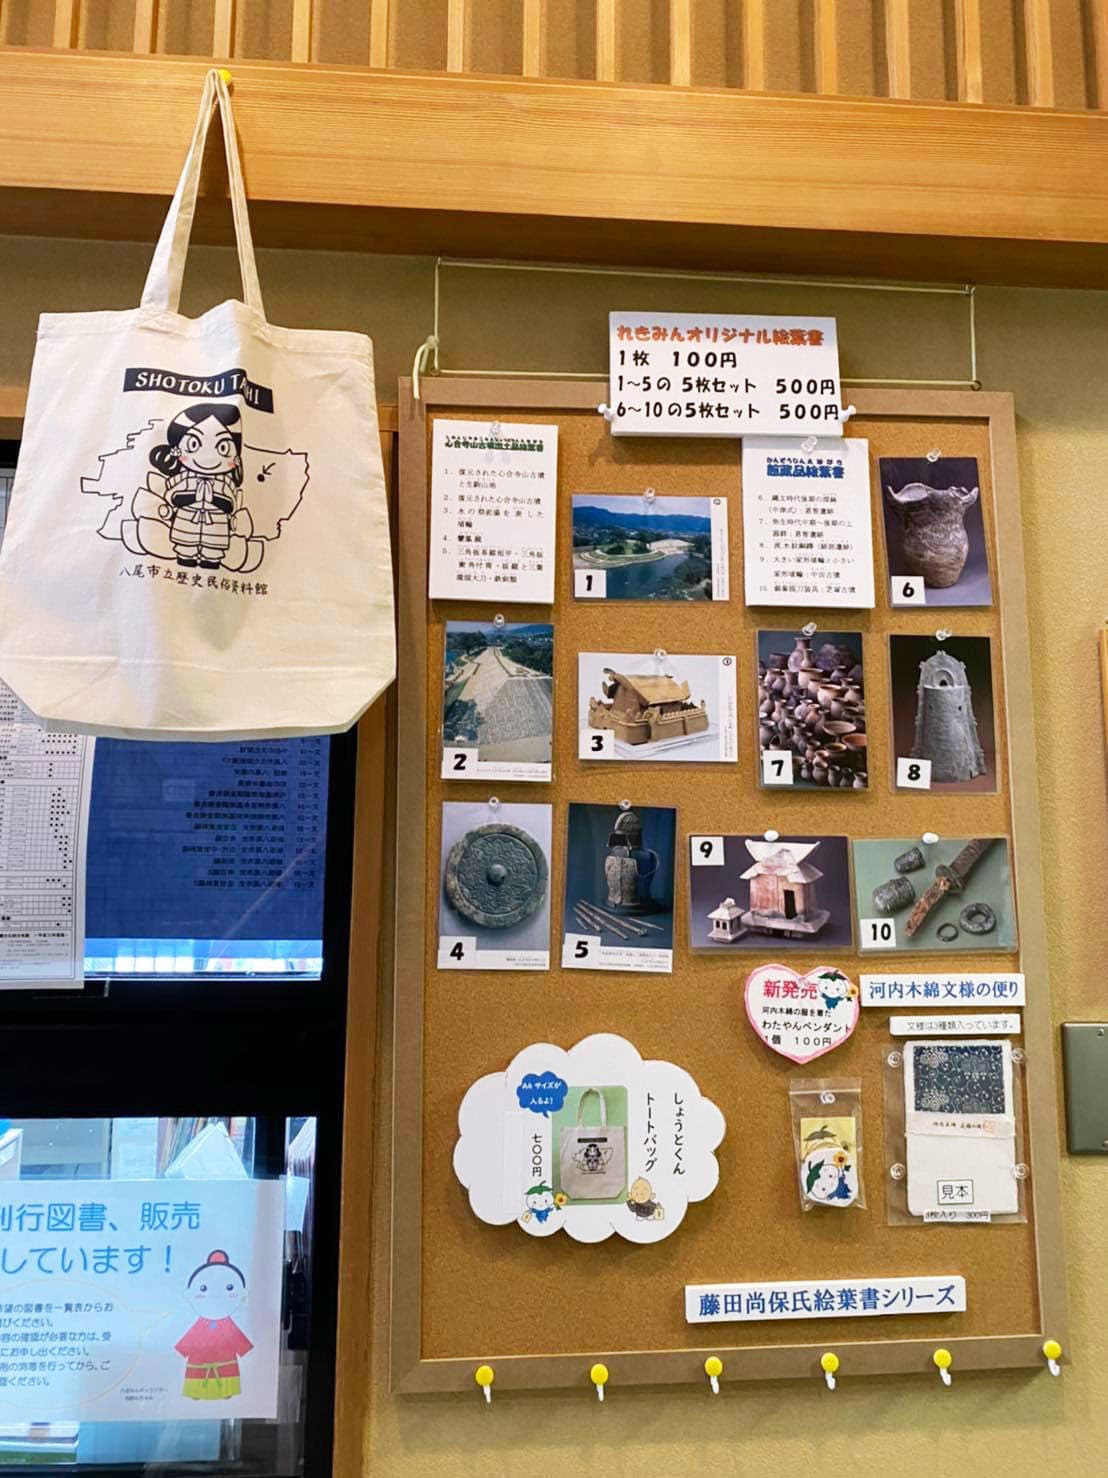 八尾市立歴史民俗資料館オリジナル「しょうとくんトートバッグ」